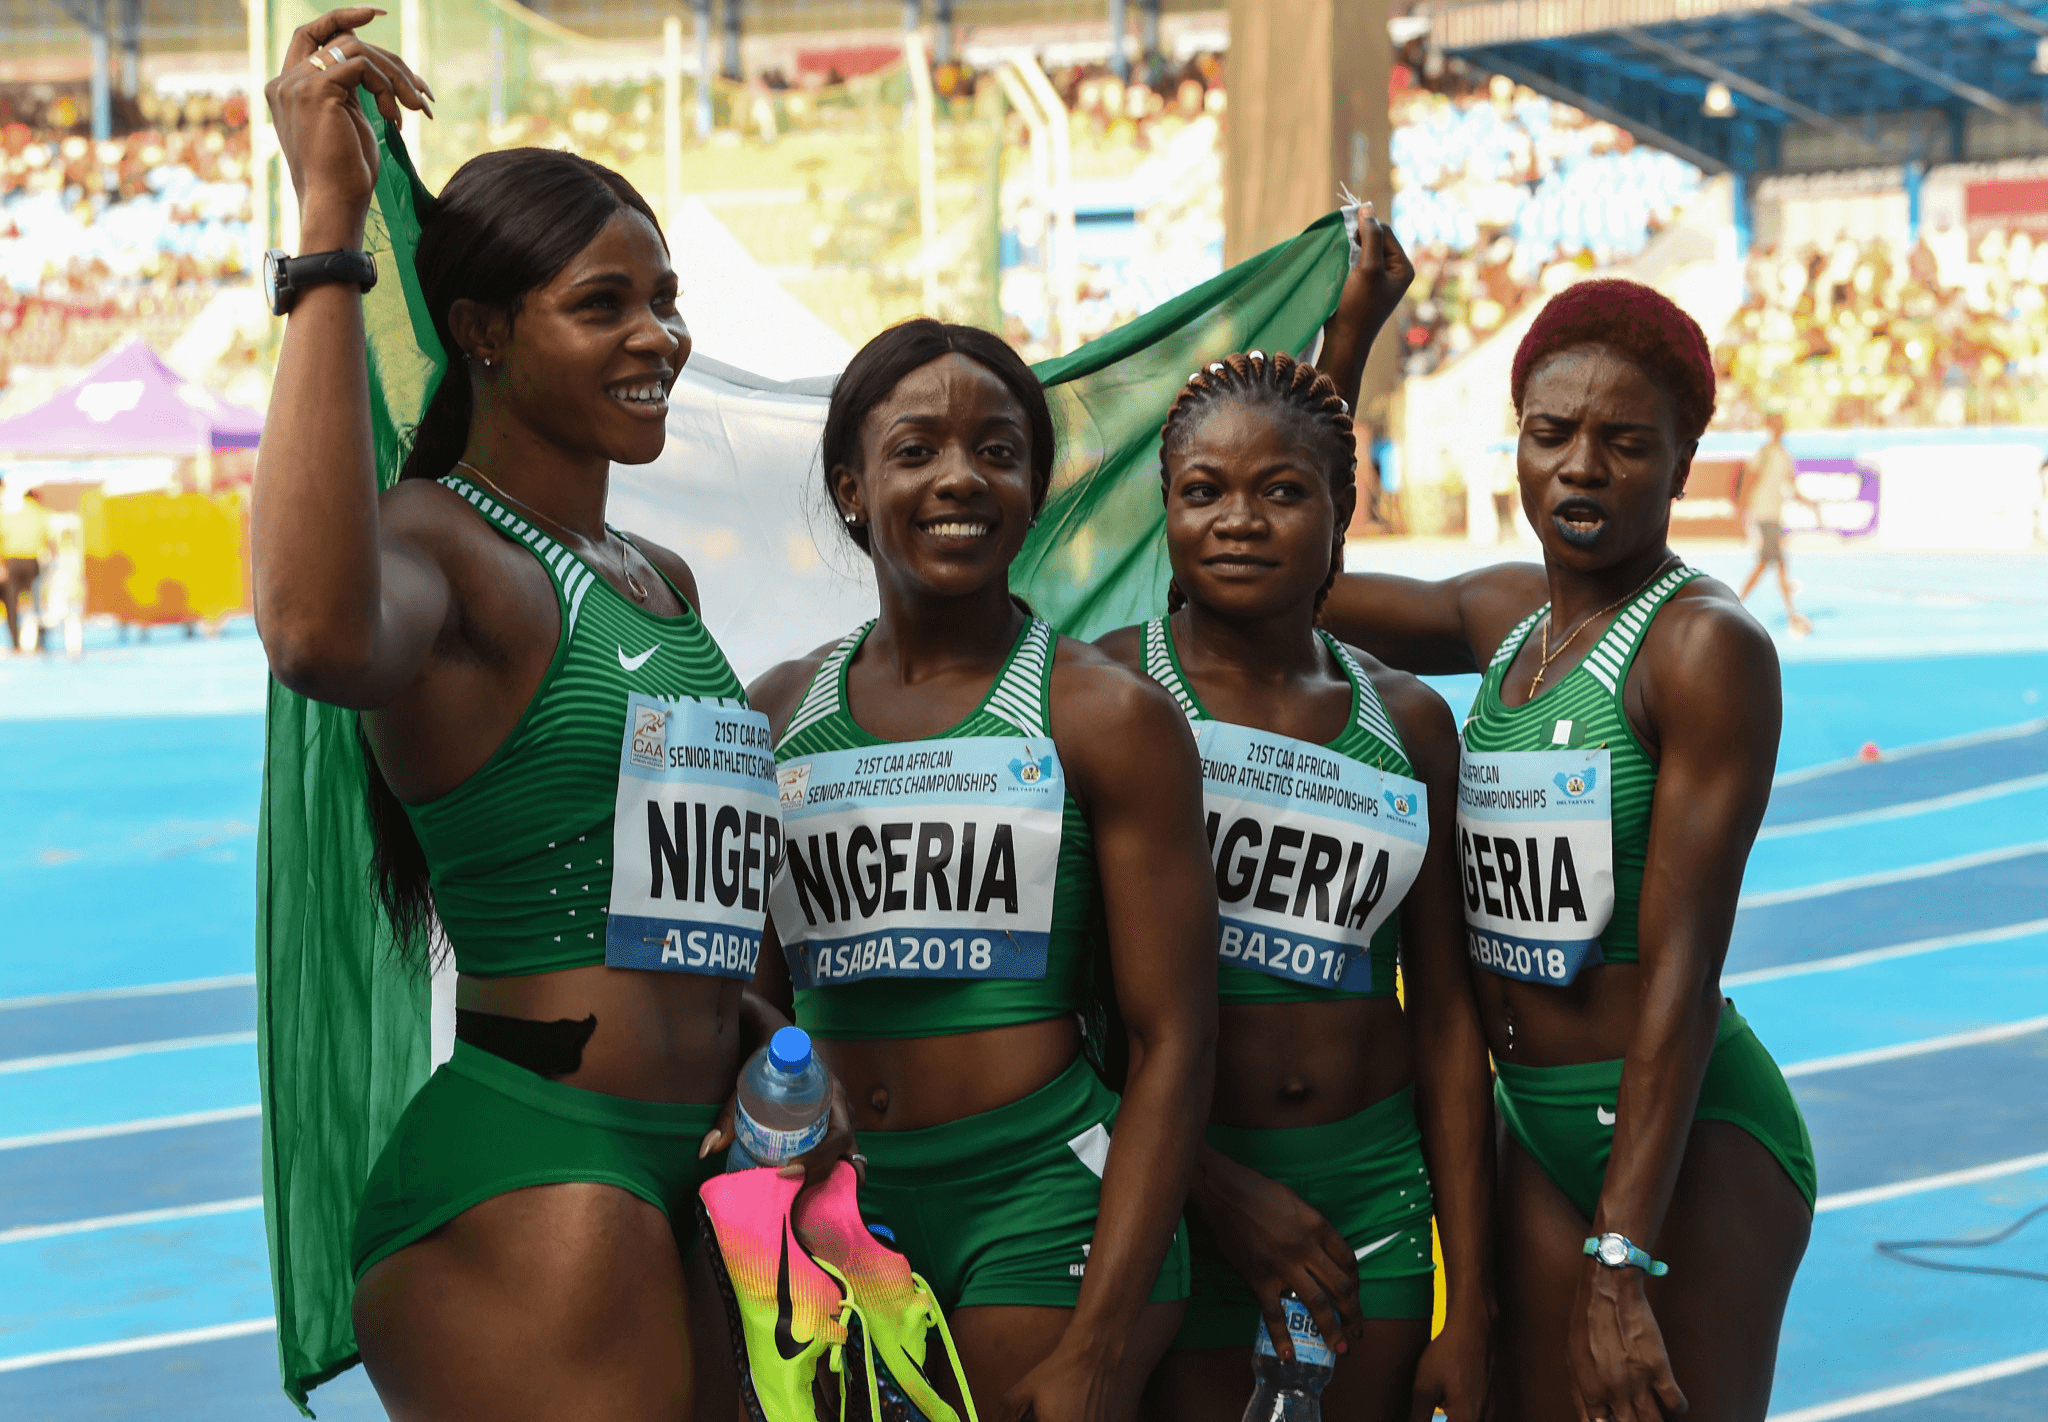 Part of Nigeria athletics team